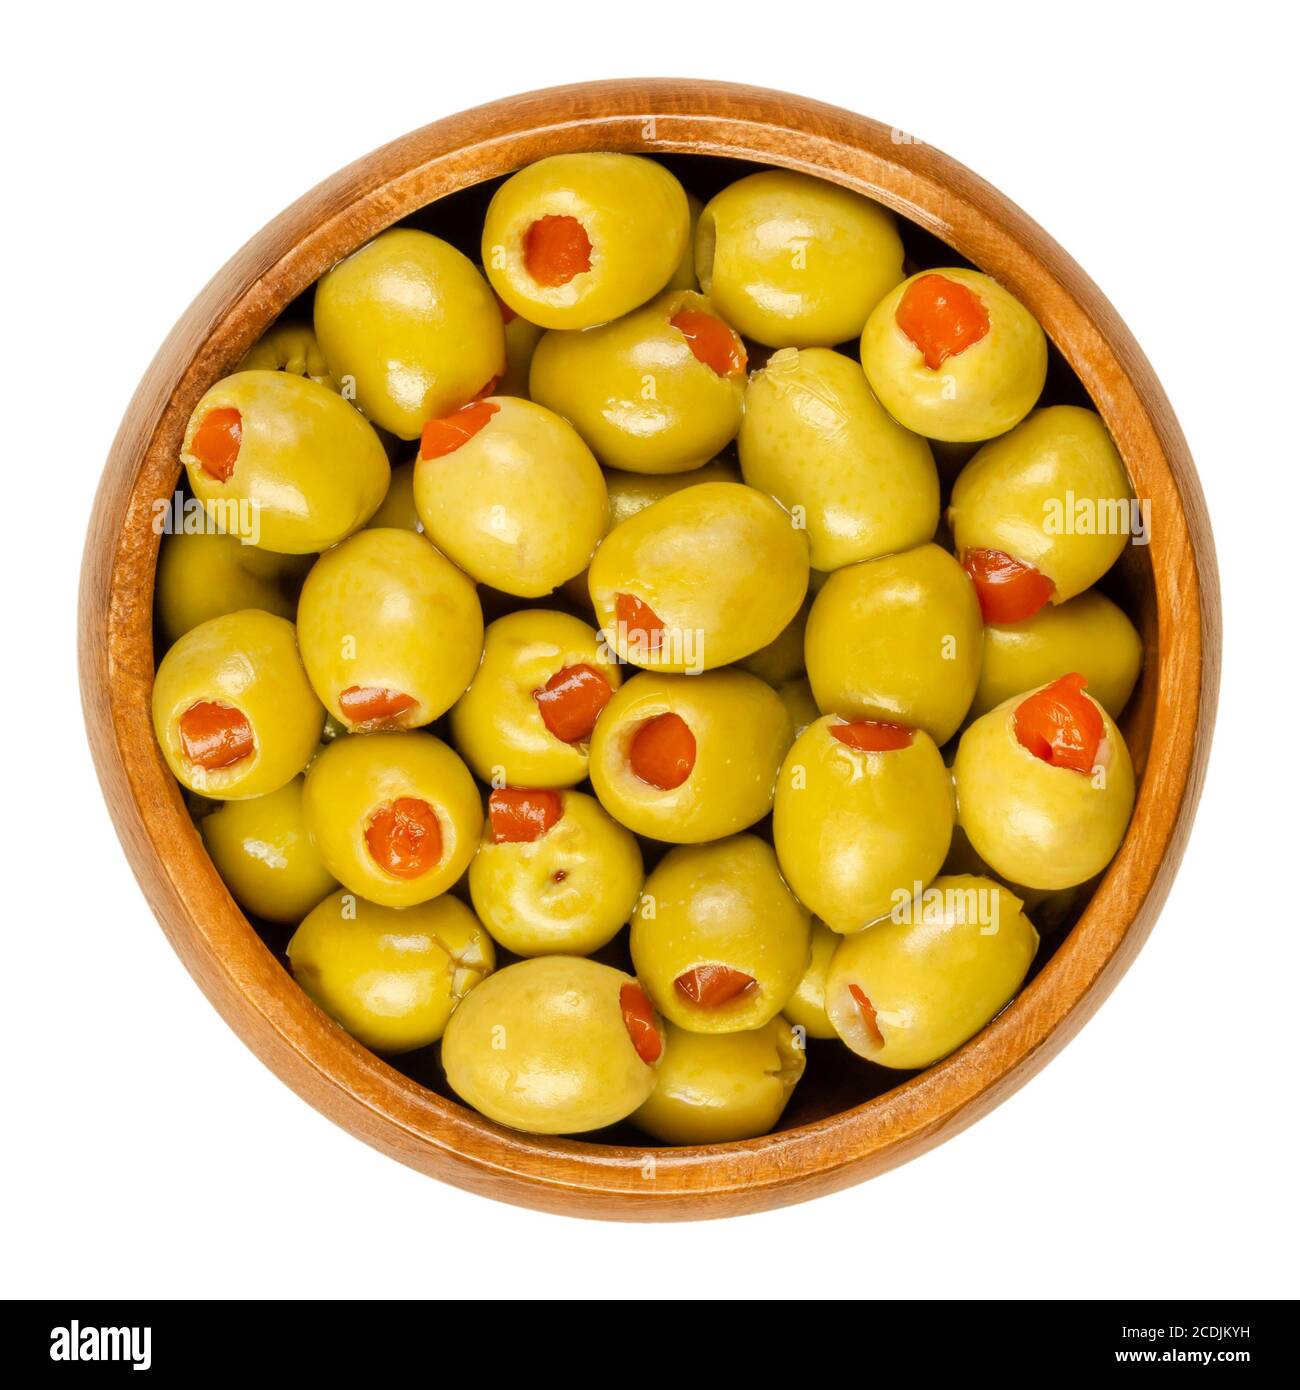 Petites olives vertes marinées, remplies de poivron rouge dans un bol en bois. Fruits d'Olea europaea, farcis avec des tranches de poivron. Gros plan. Banque D'Images